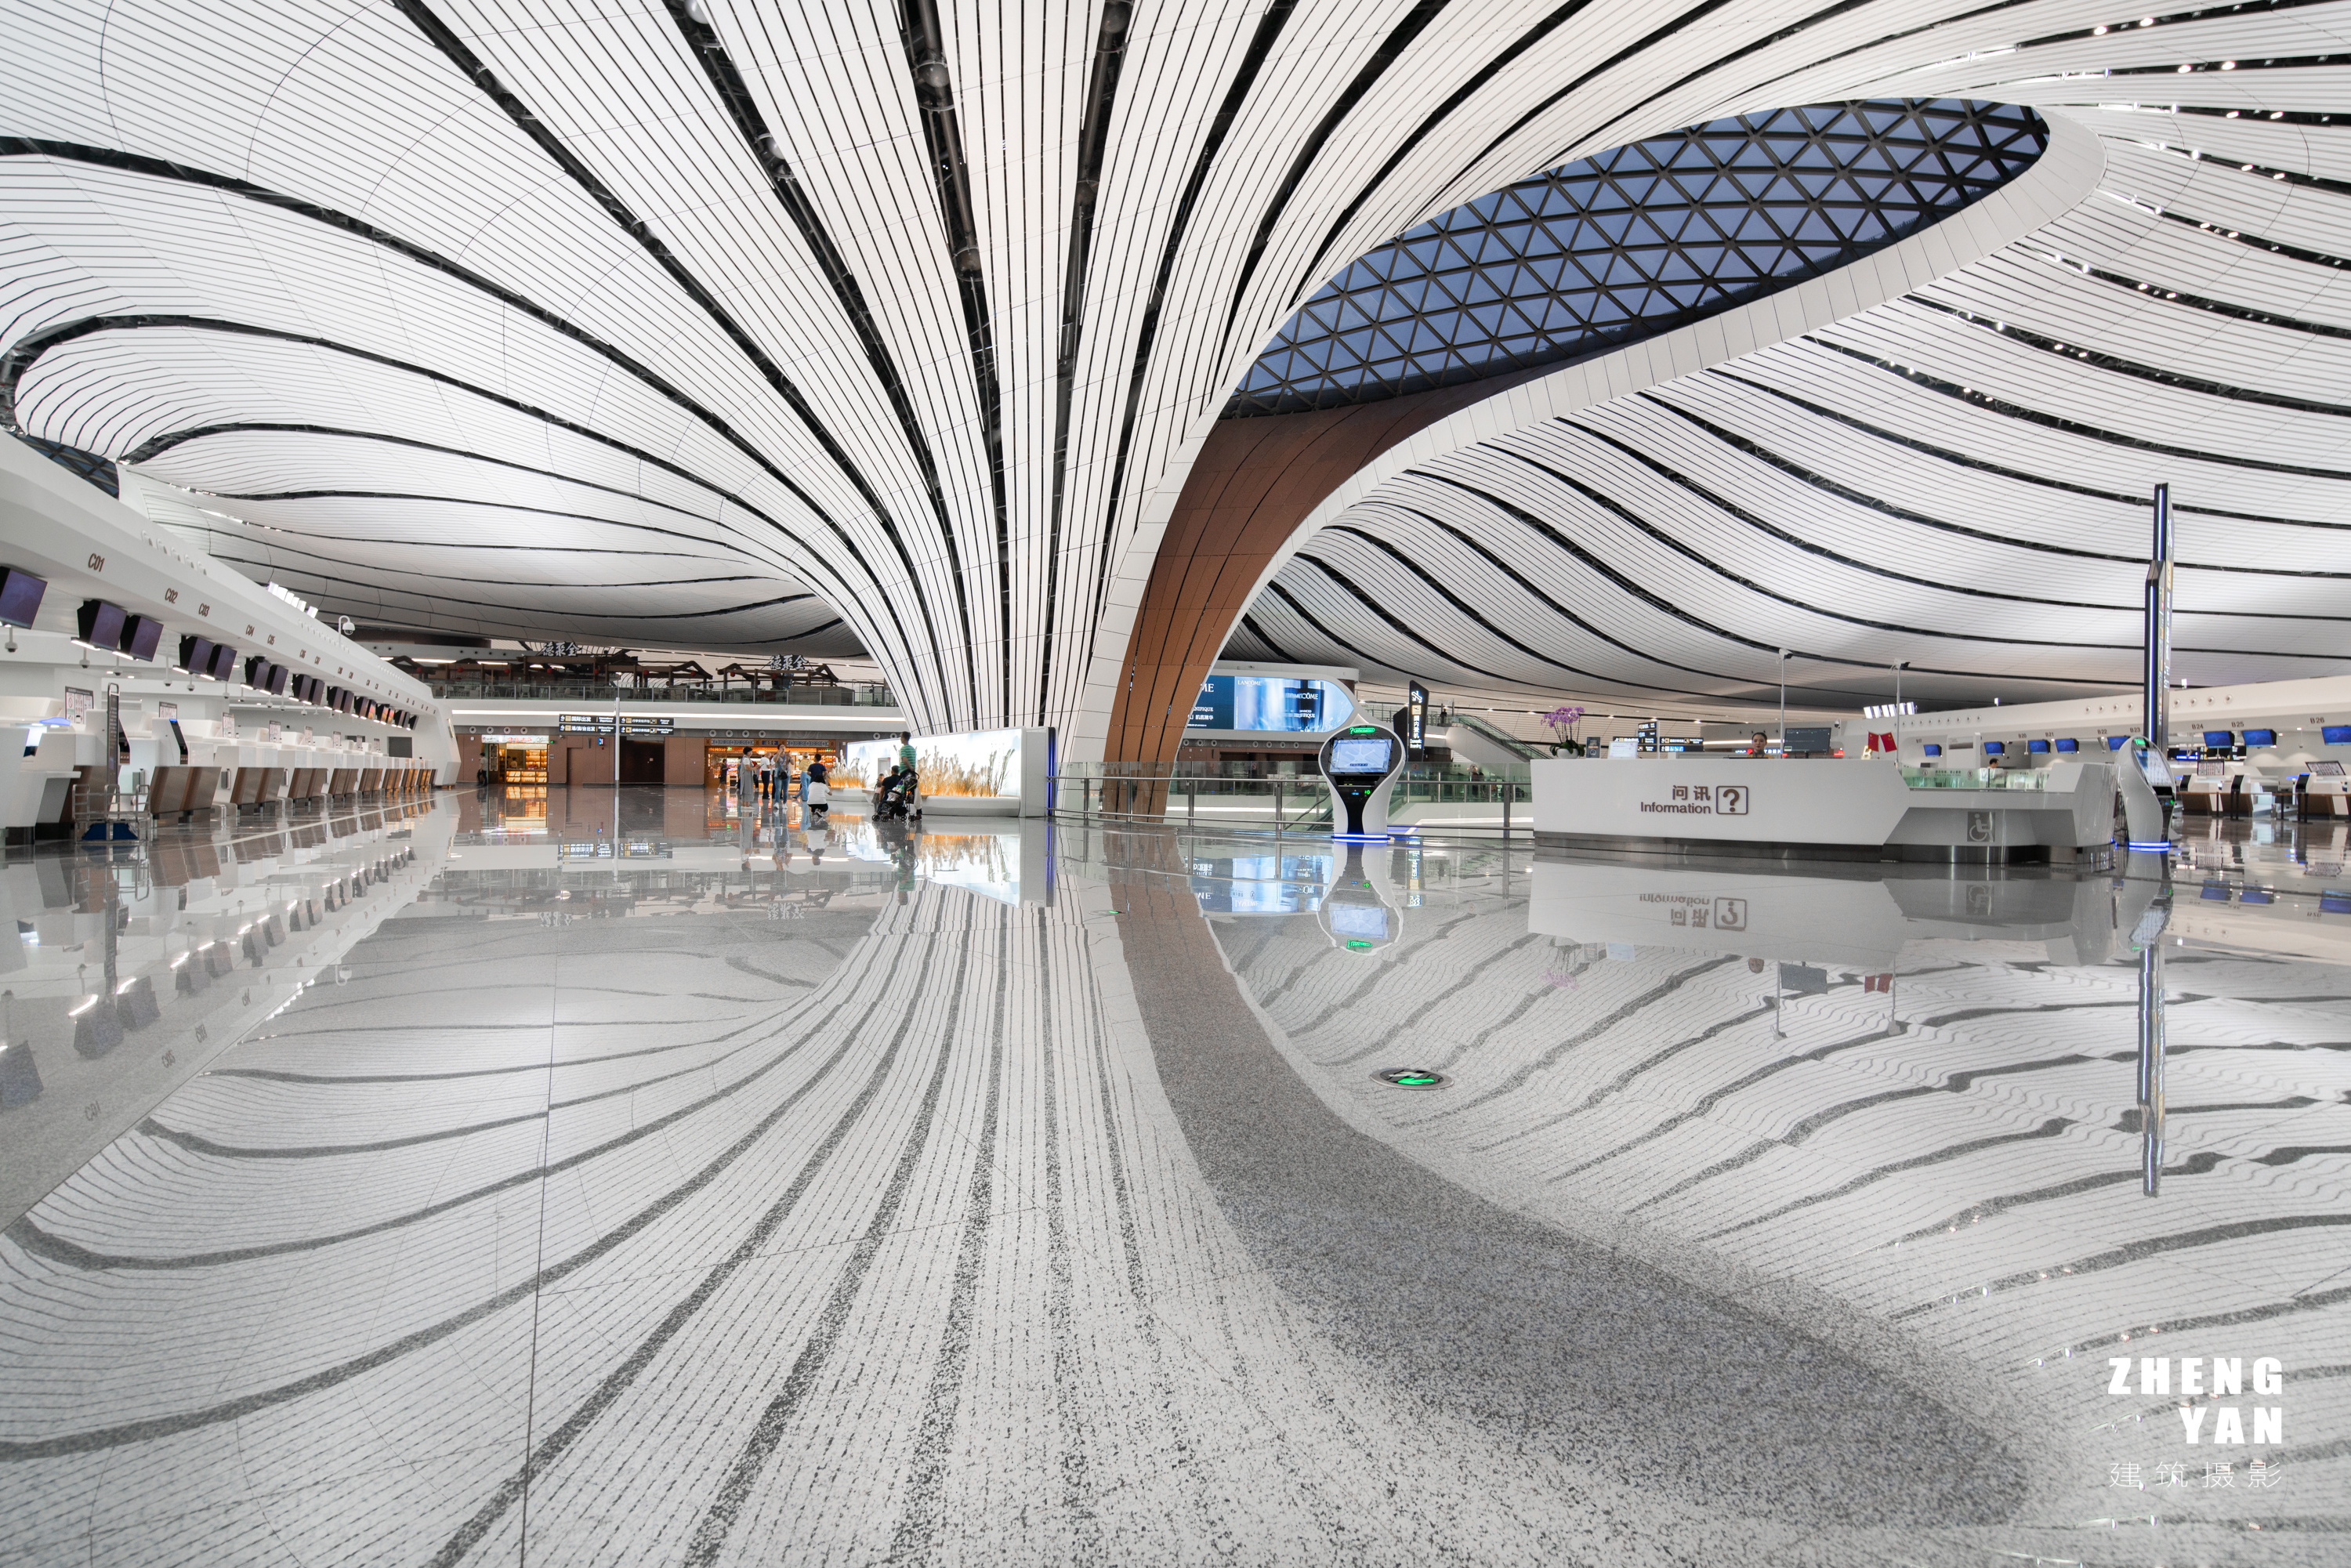 『建筑摄影』北京大兴国际机场